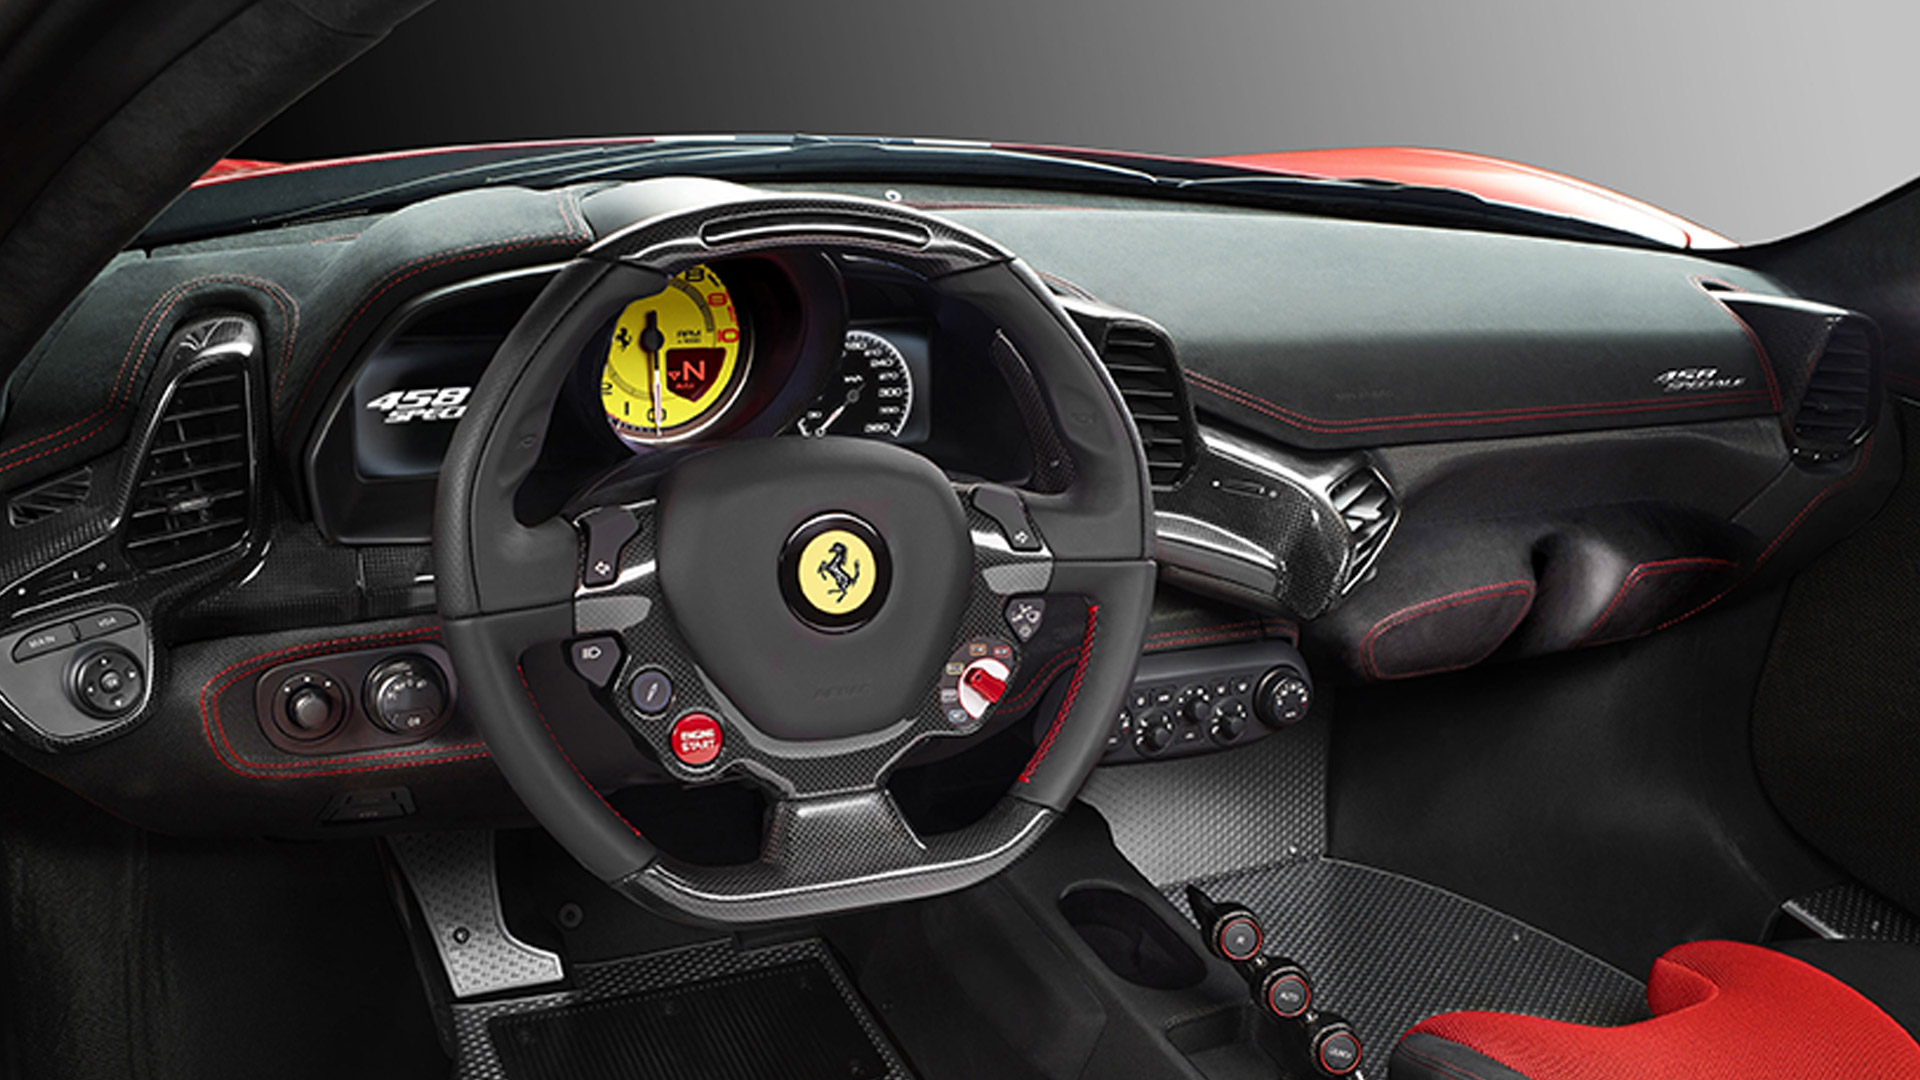 Ferrari 458 2015 Speciale Compare